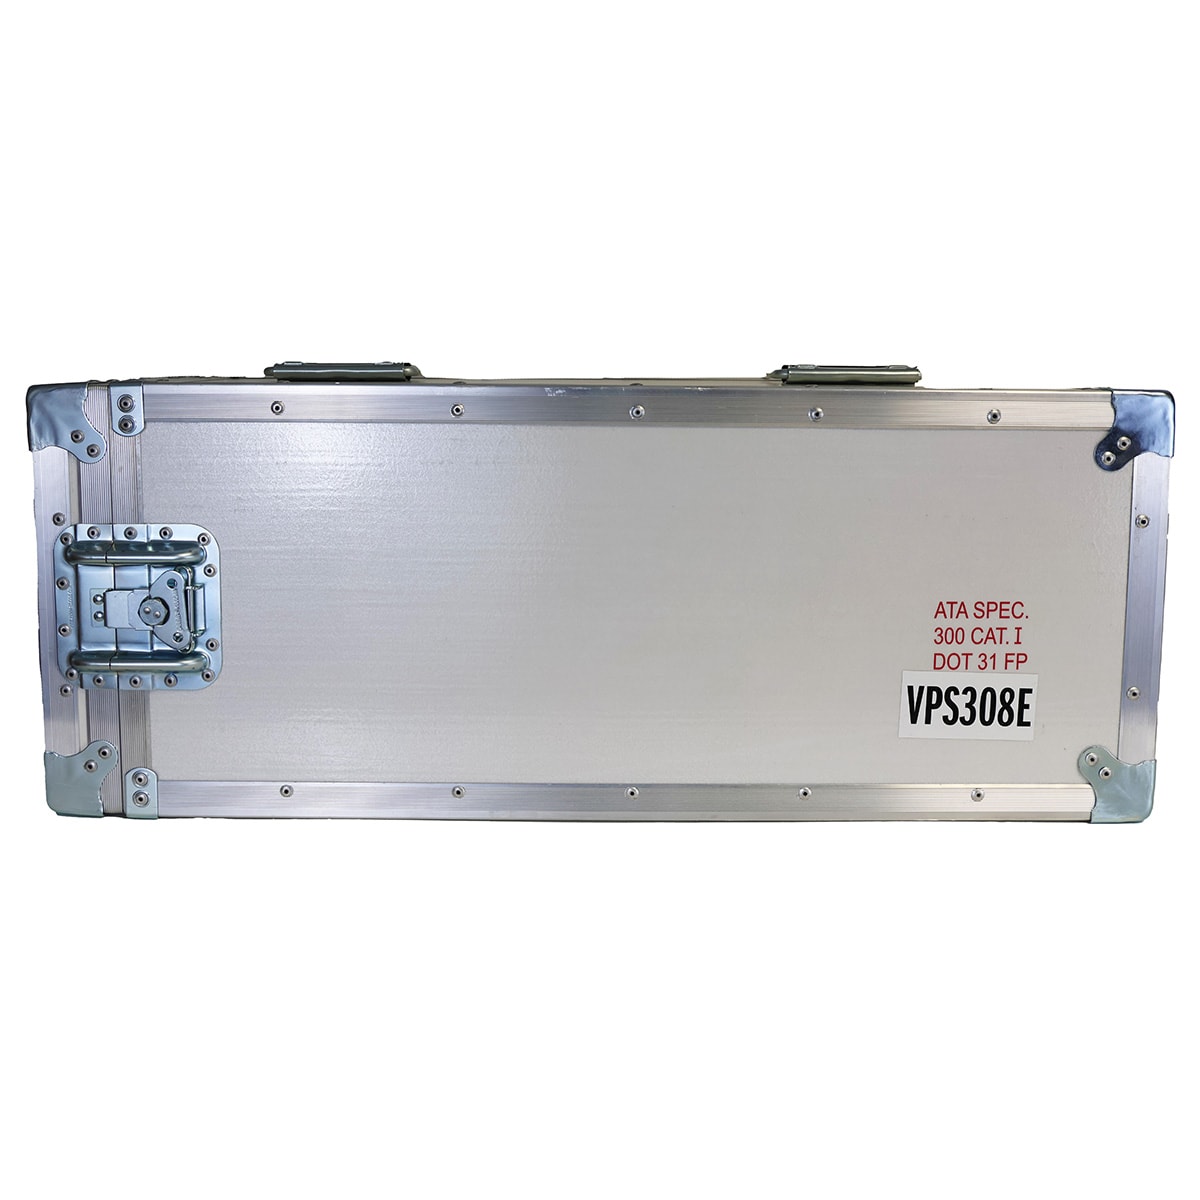 HazMat 24.00 x 6.00 x 6.00 IN - Oxygen Cylinder Container - Viking 